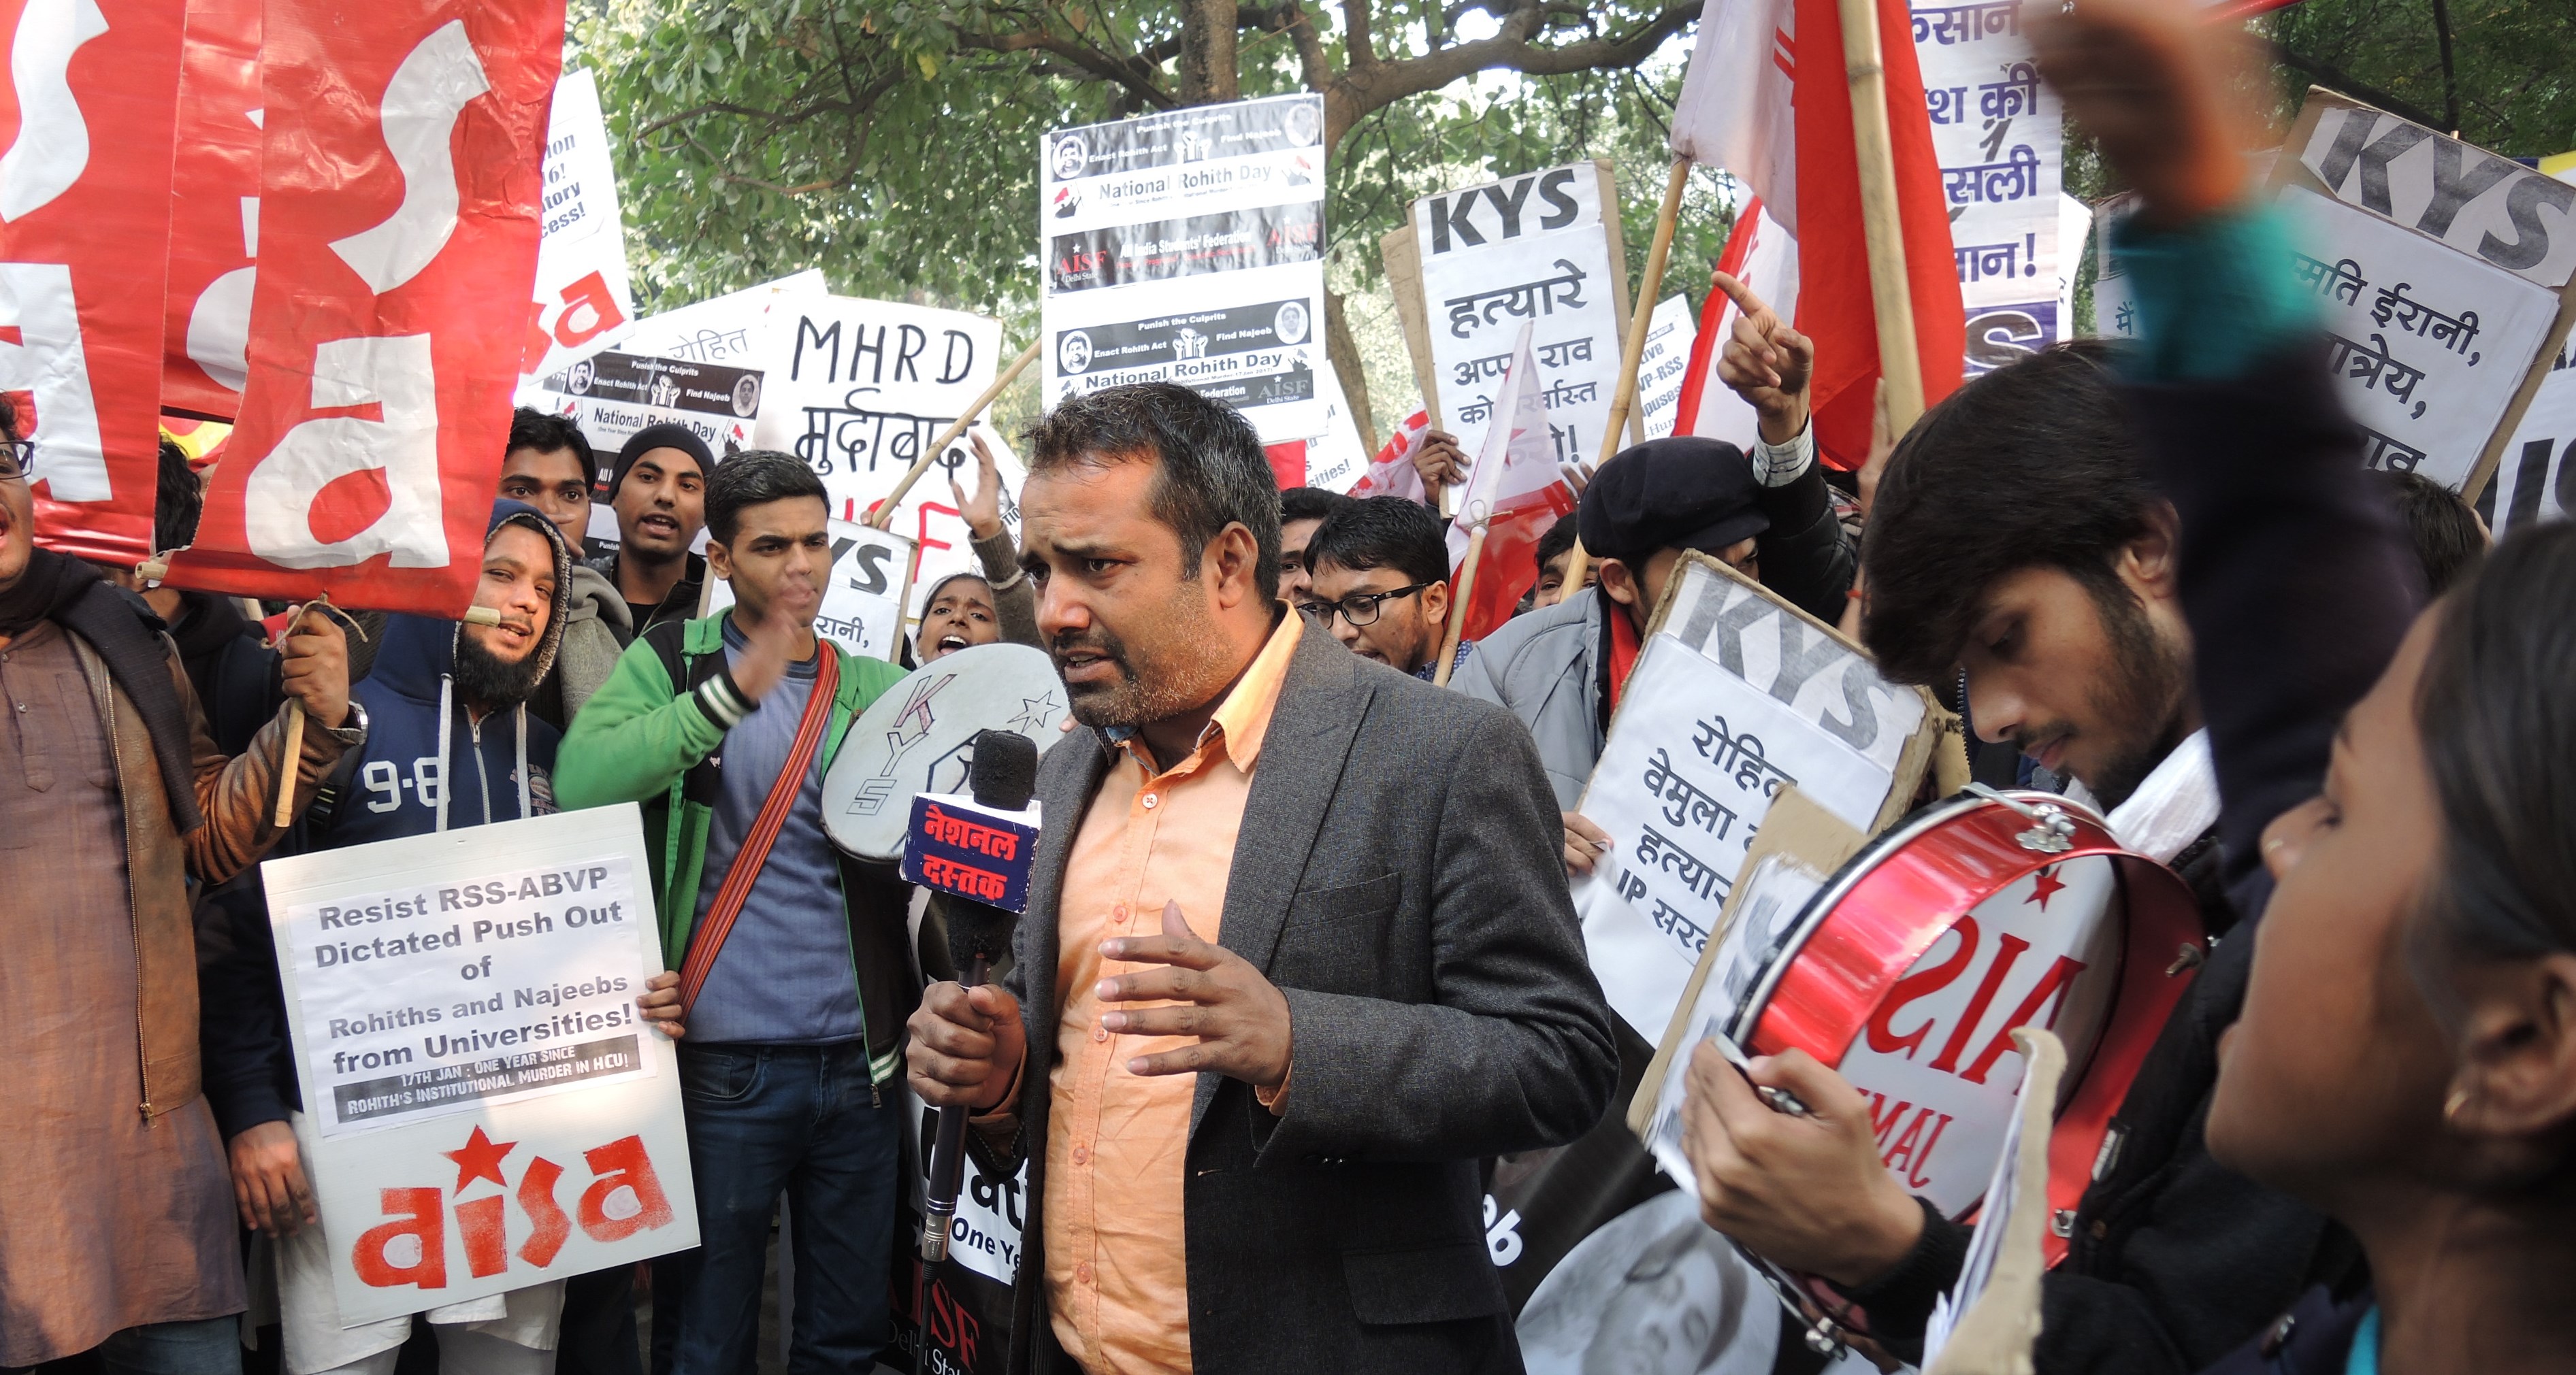 Studenten in Neu Delhi protestieren gegen die politische Einflussnahme der RSS auf dem Campus sowie gegen die willkürliche Änderungen der Lehrpläne; Foto: Dominik Müller